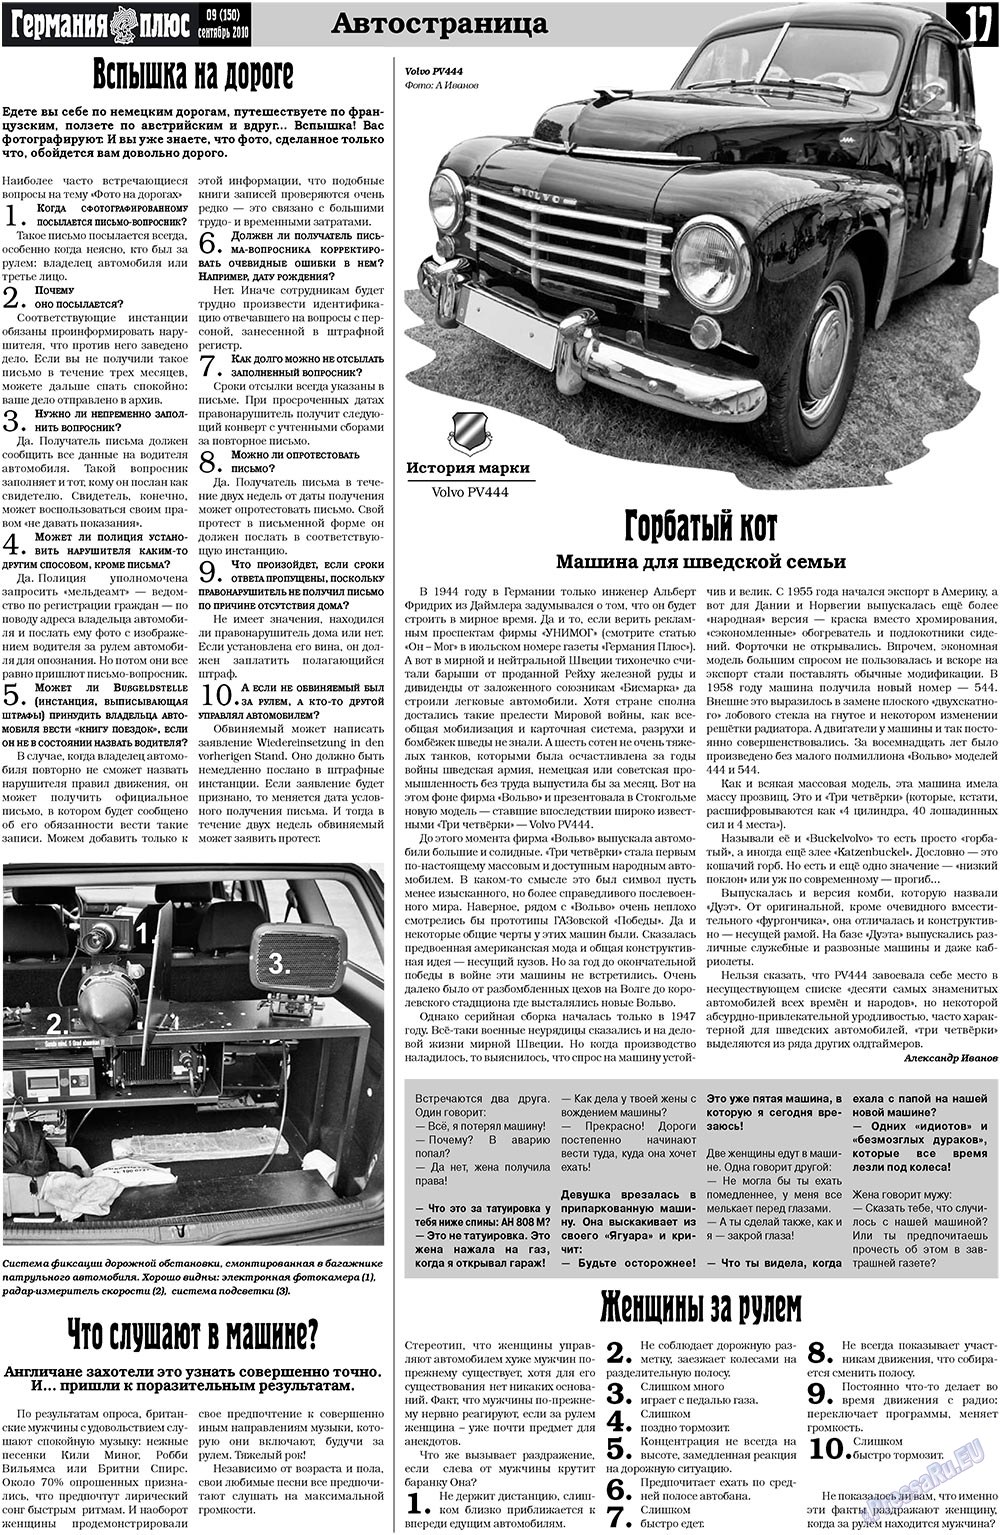 Германия плюс (газета). 2010 год, номер 9, стр. 17